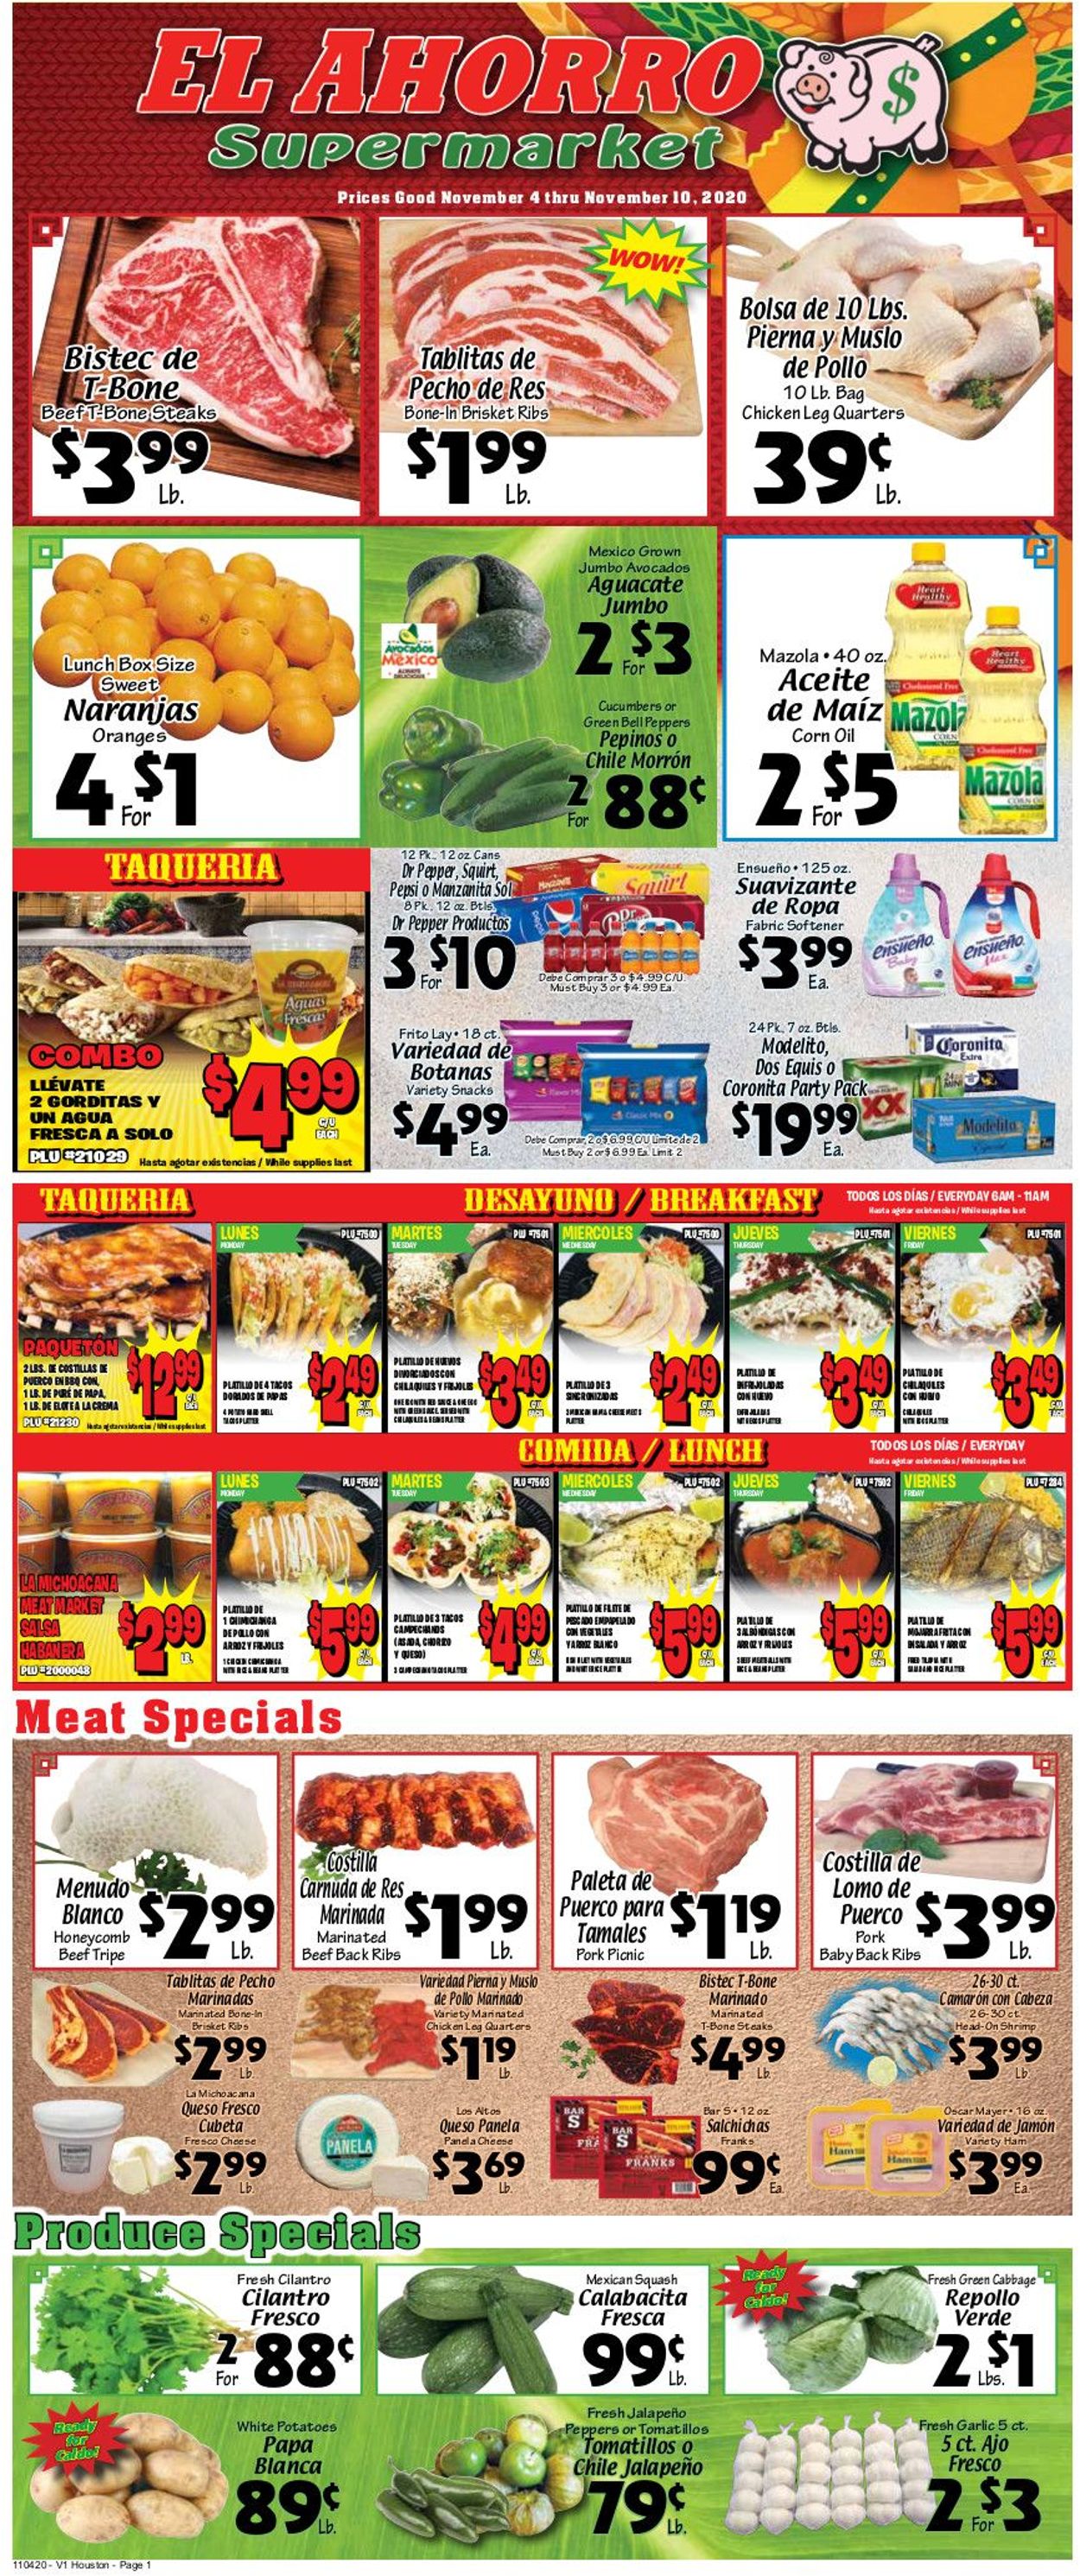 El Ahorro Supermarket Ad from 11/04/2020